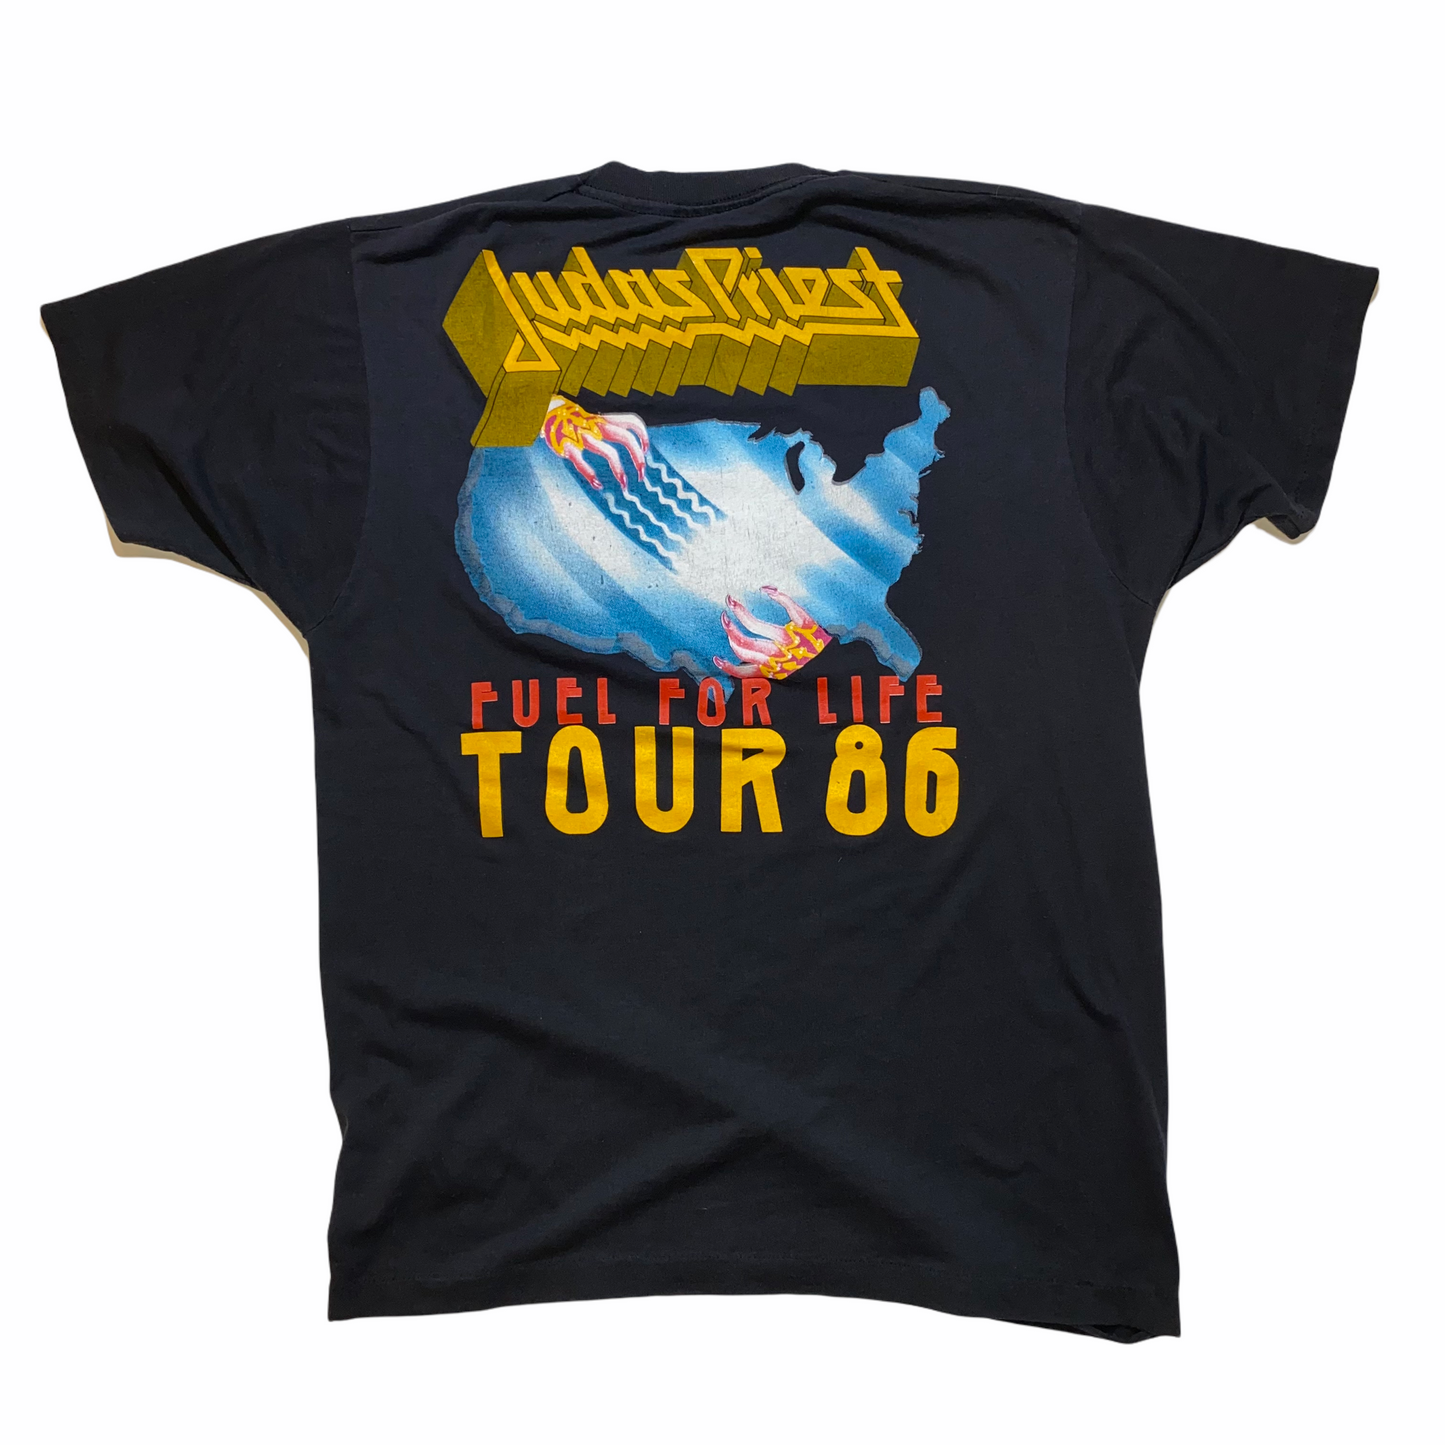 
                  
                    ‘86 Judas Priest “Fuel For Life” Tour
                  
                